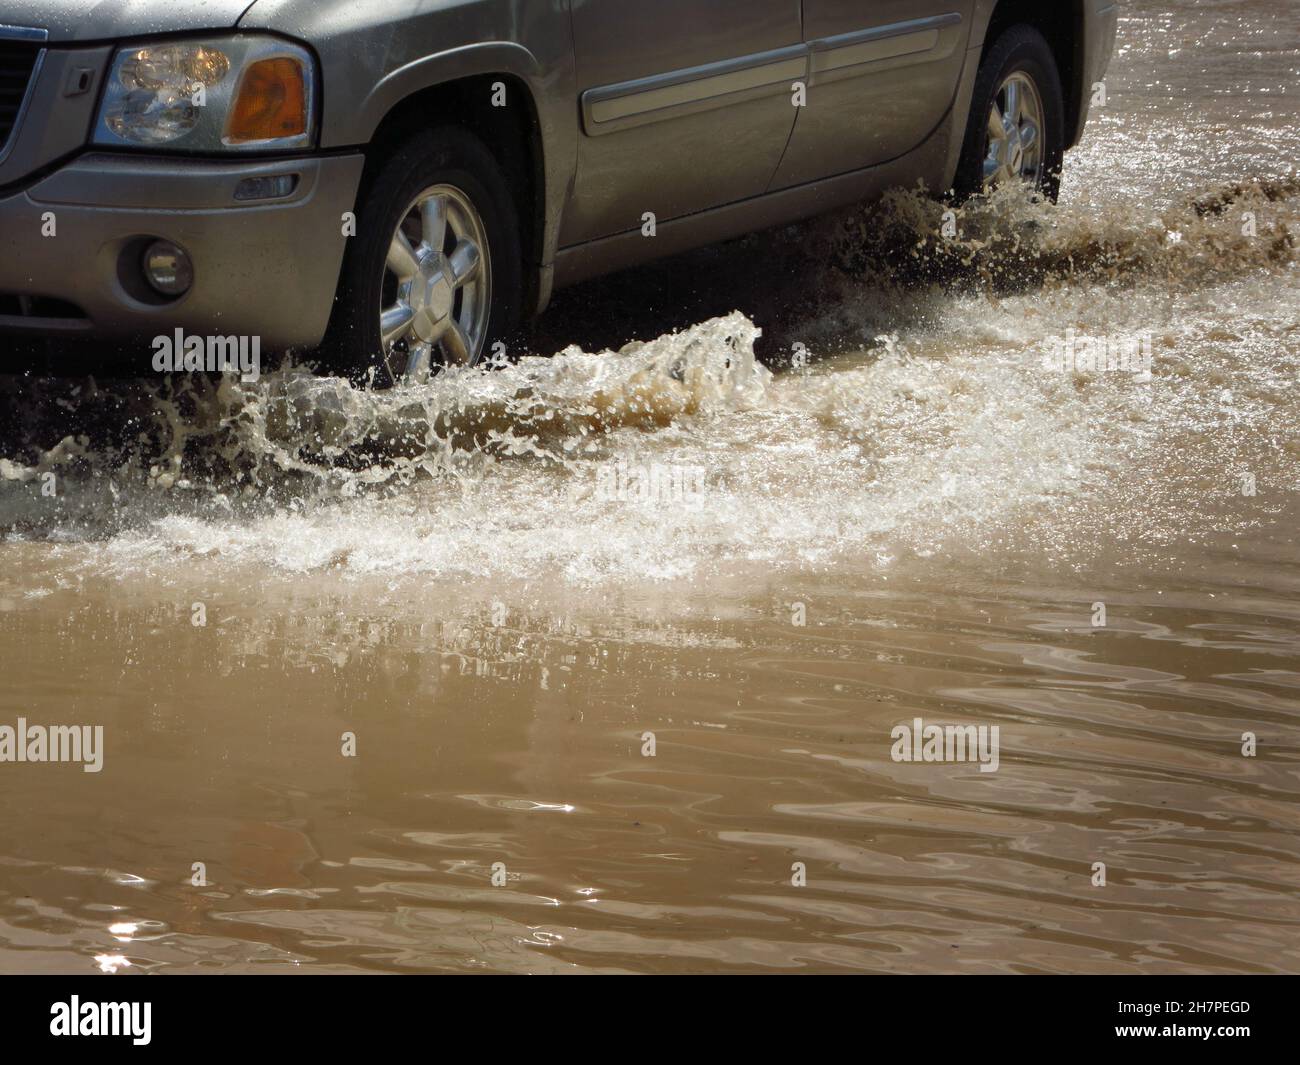 La voiture traverse une rue inondée avec des pneus éclaboussant de l'eau Banque D'Images